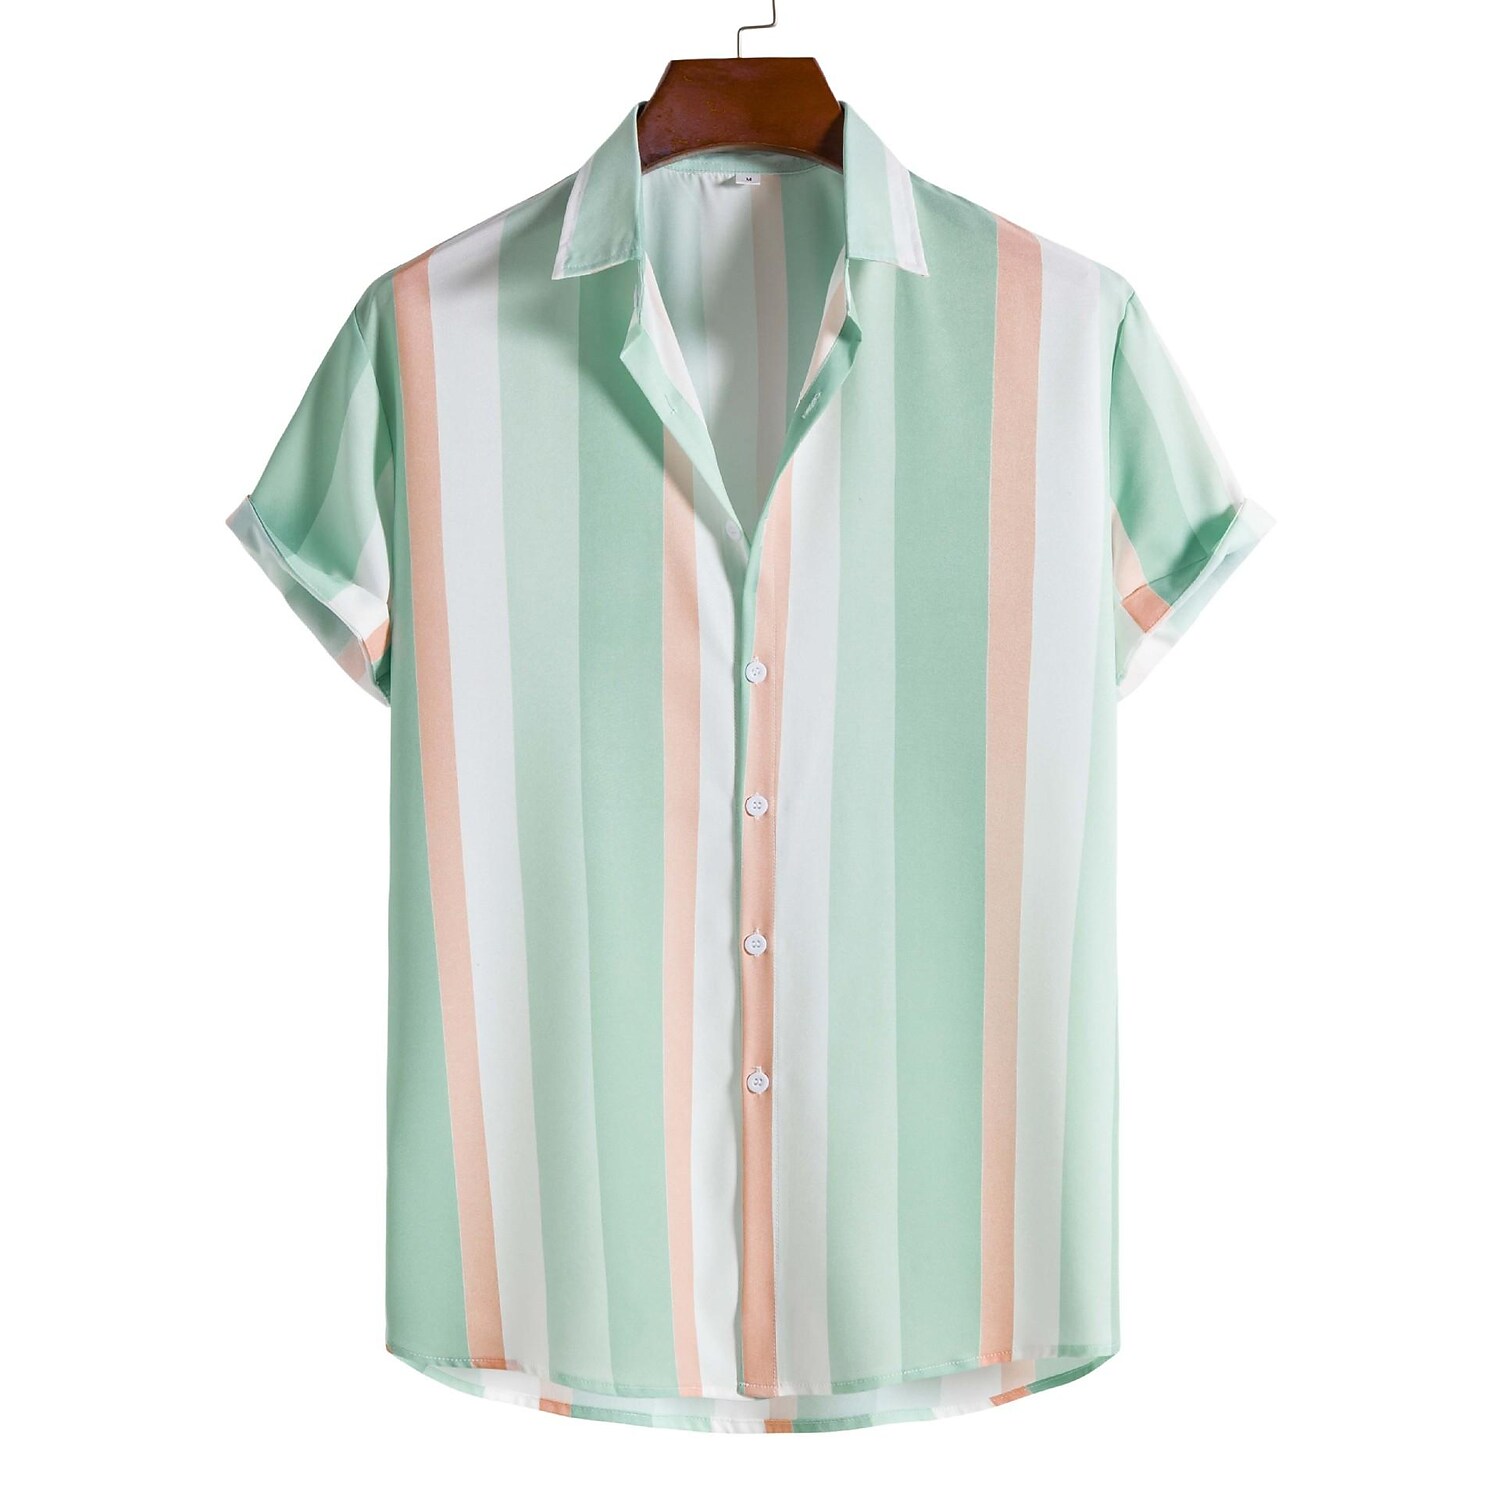 Men's Light Green Striped Print Short Sleeve Shirt-poisonstreetwear.com